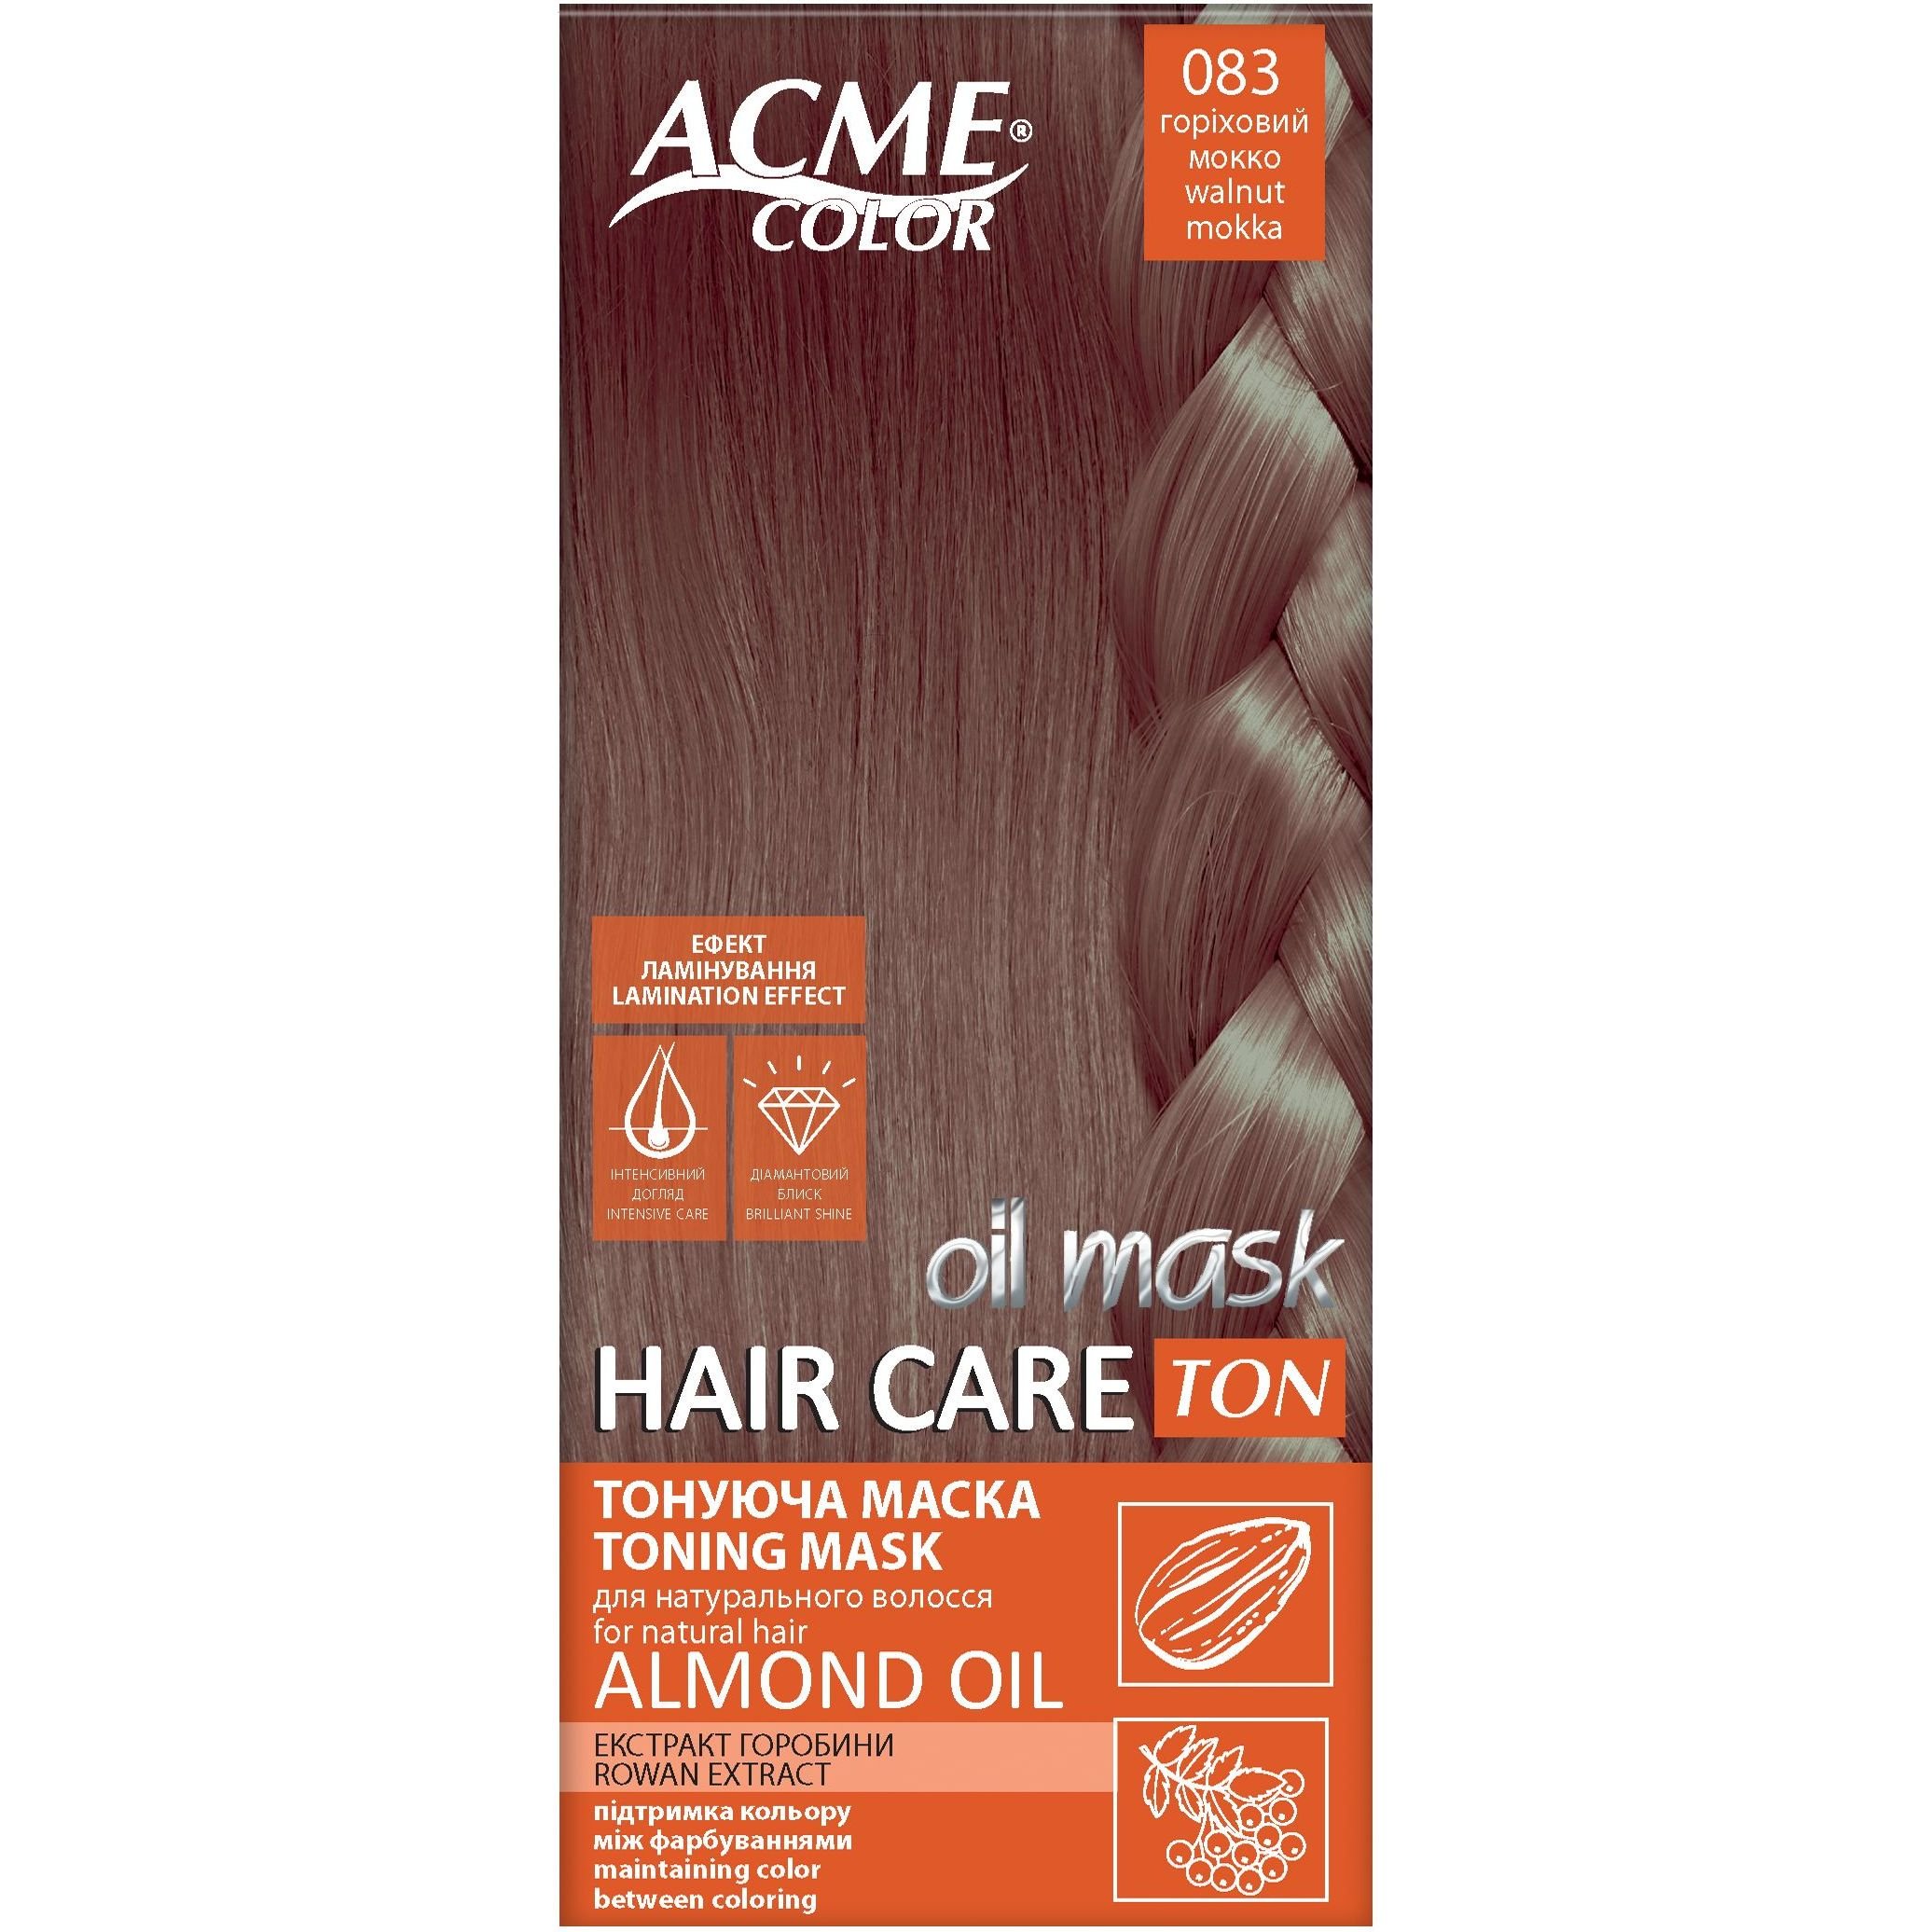 Тонуюча маска для волосся Acme Color Hair Care Ton oil mask, відтінок 083, горіховий мокко, 30 мл - фото 1